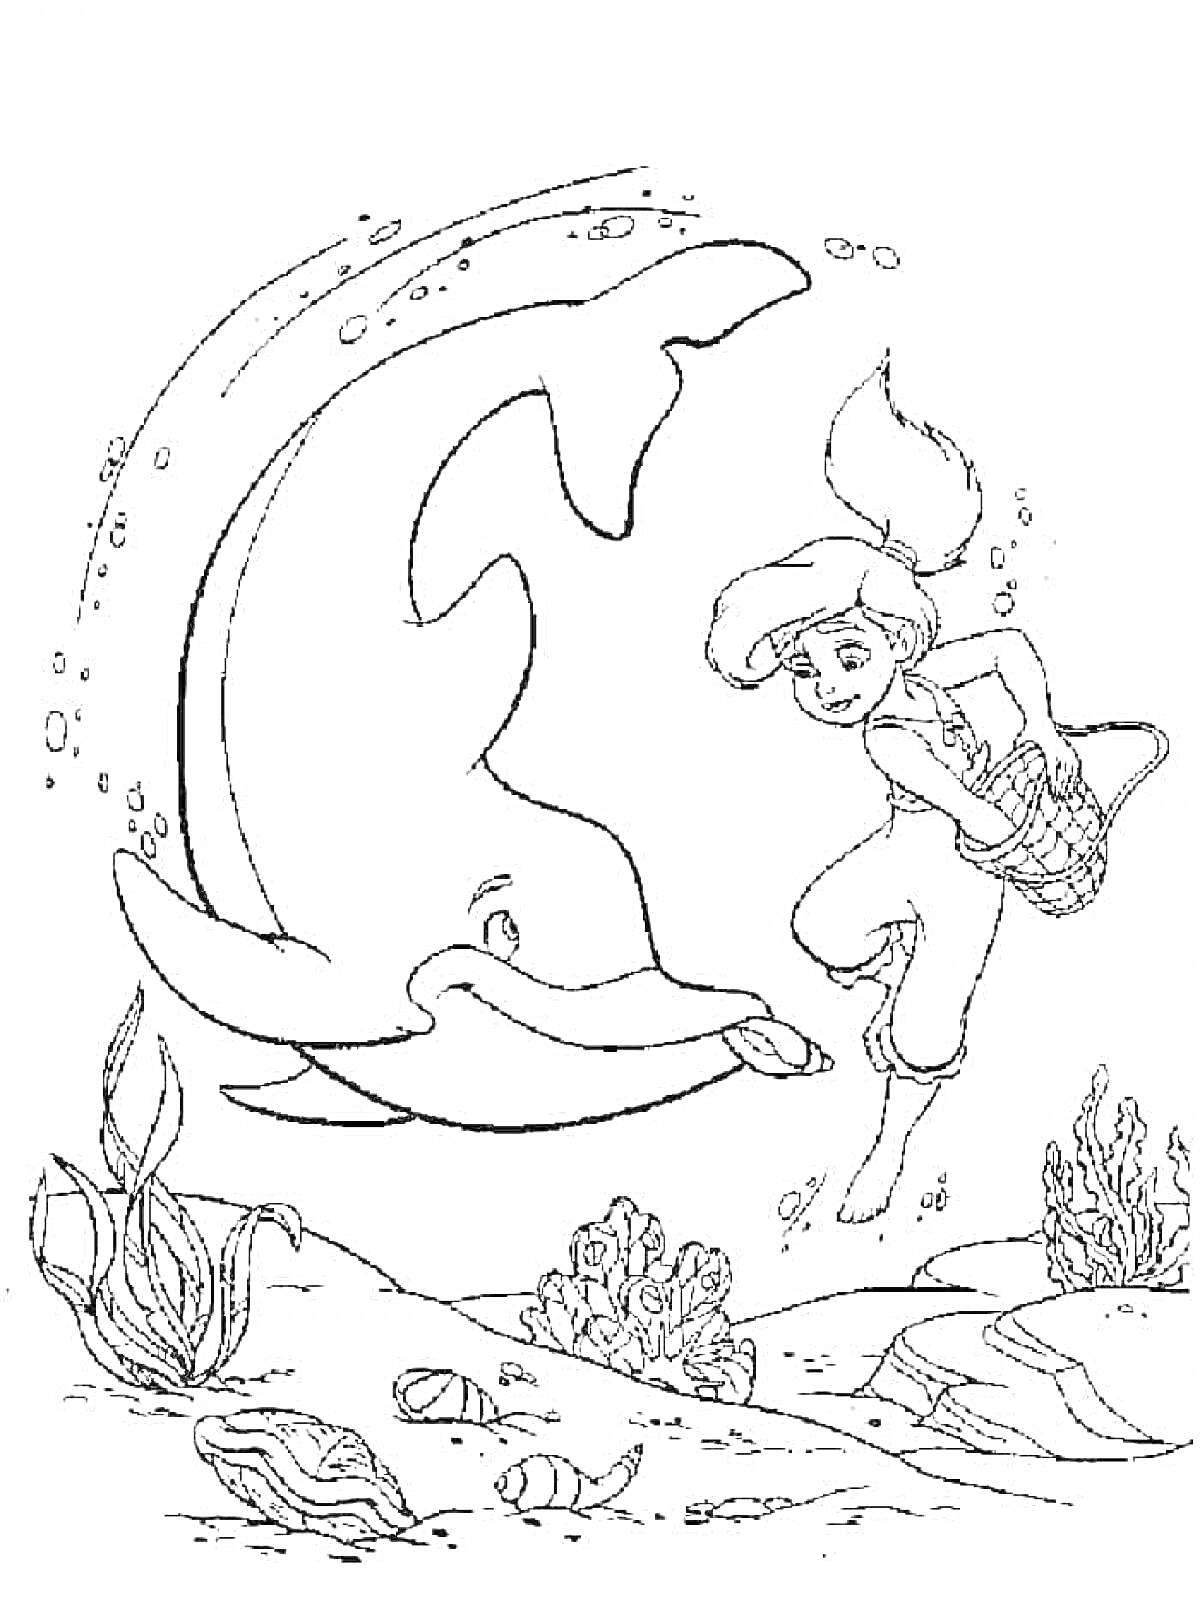 Мелоди и дельфин под водой с рыбами и водорослями